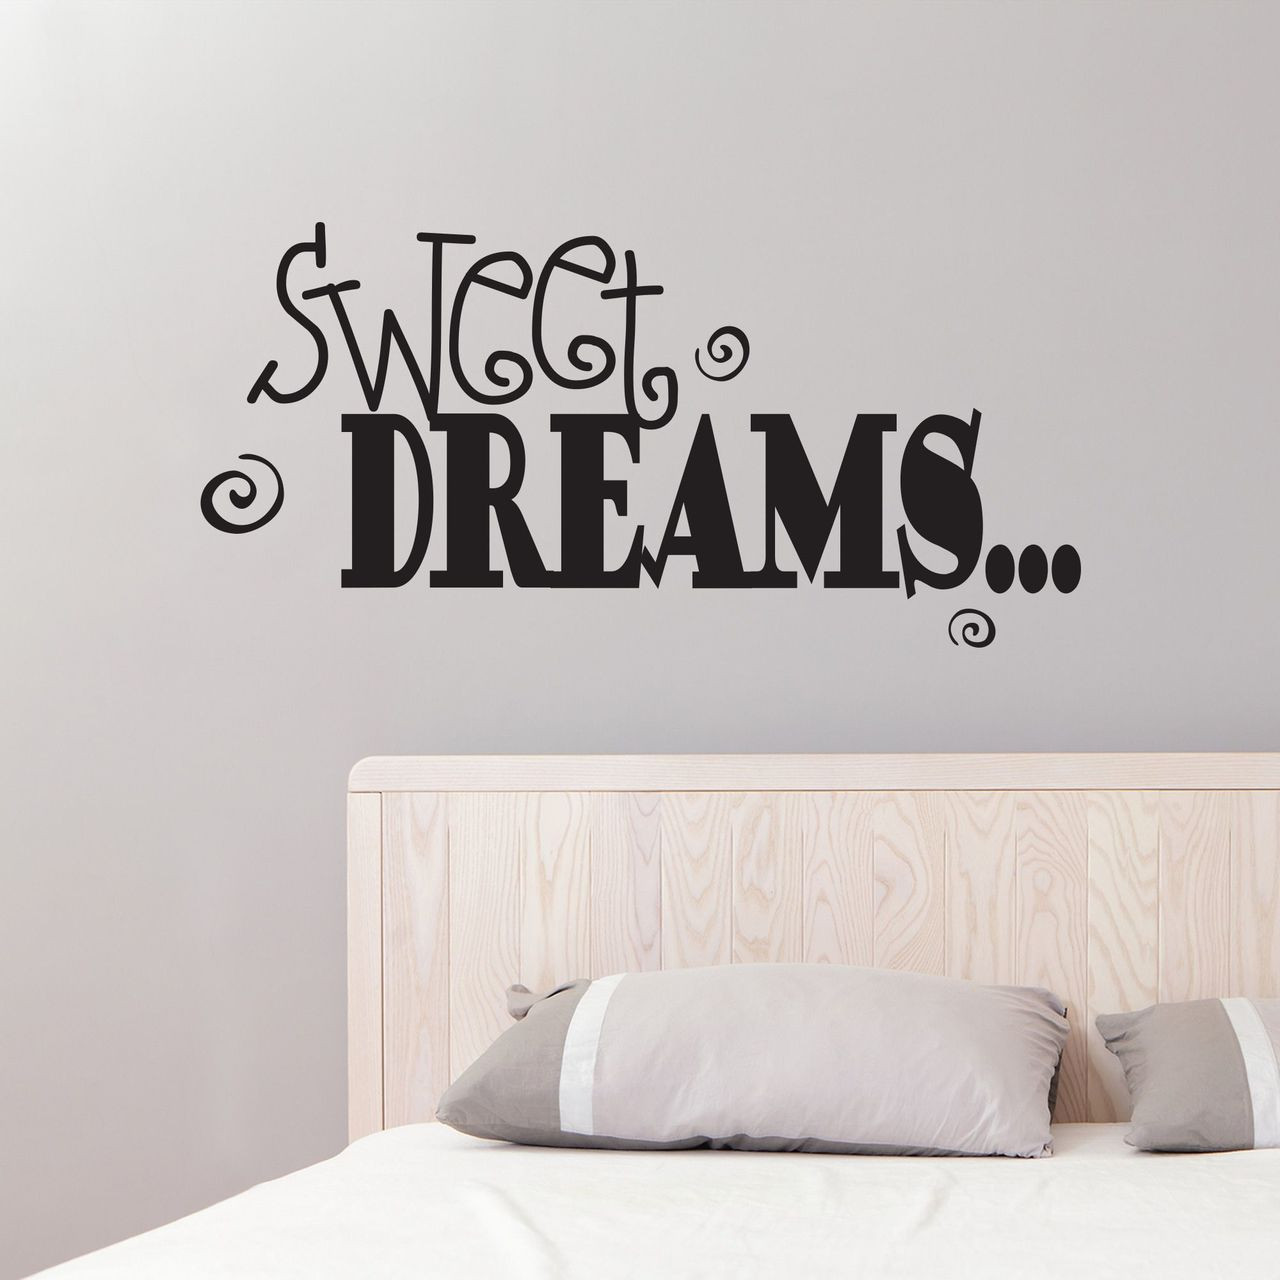 Sweet Dreams' Sticker